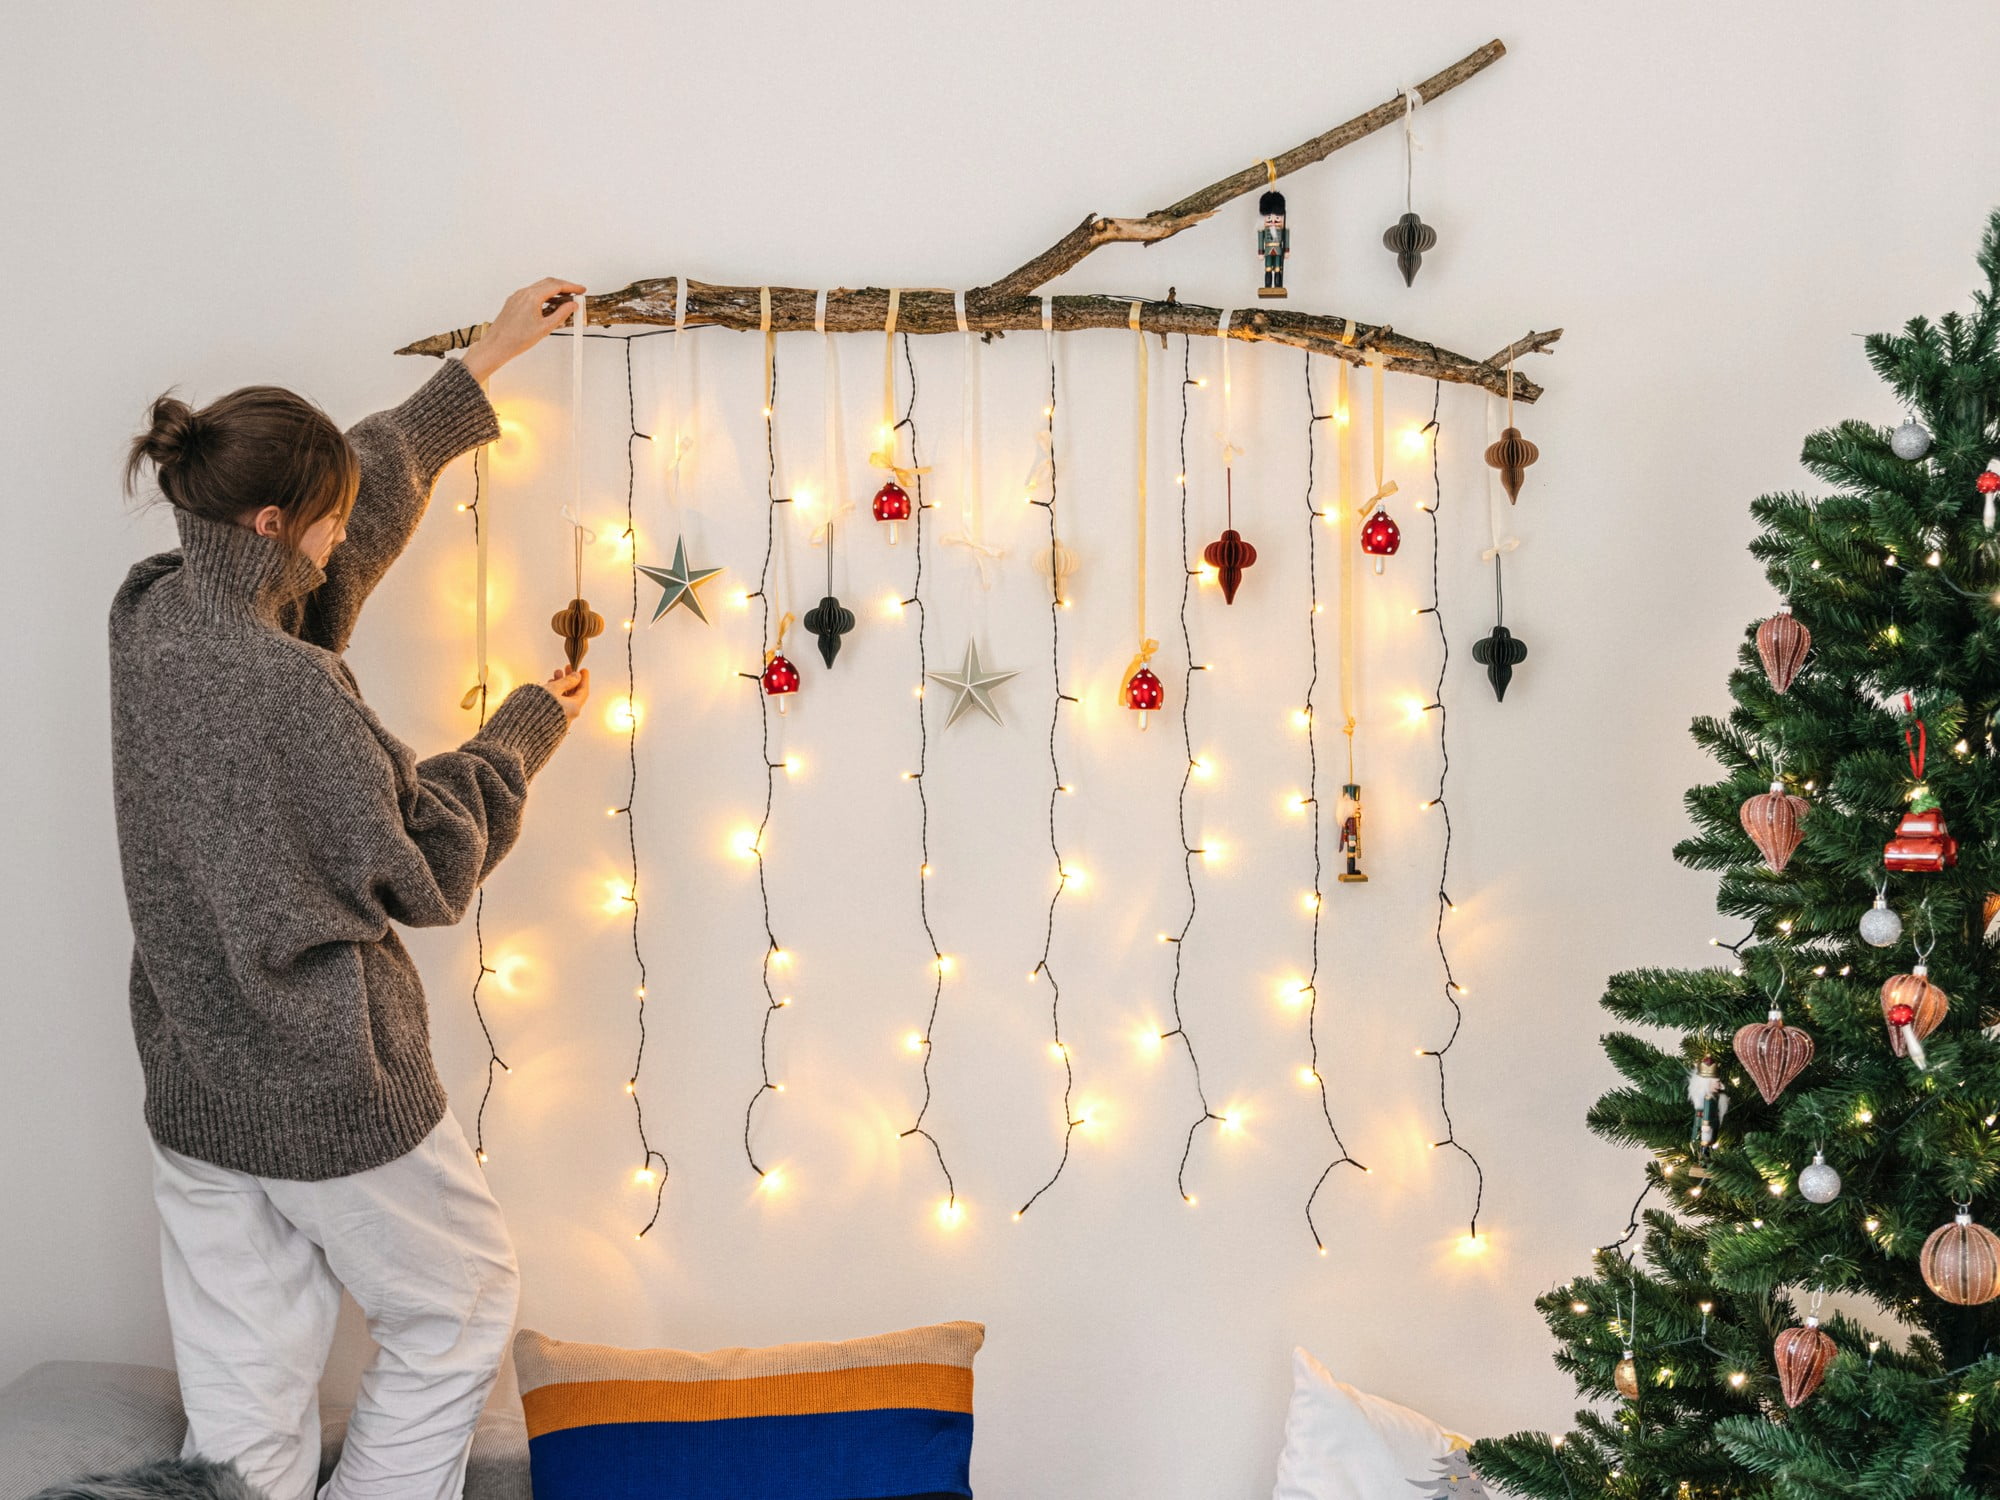 Tot ce ai nevoie pentru un decor de Crăciun spectaculos este o creangă, câteva ornamente și luminițe.